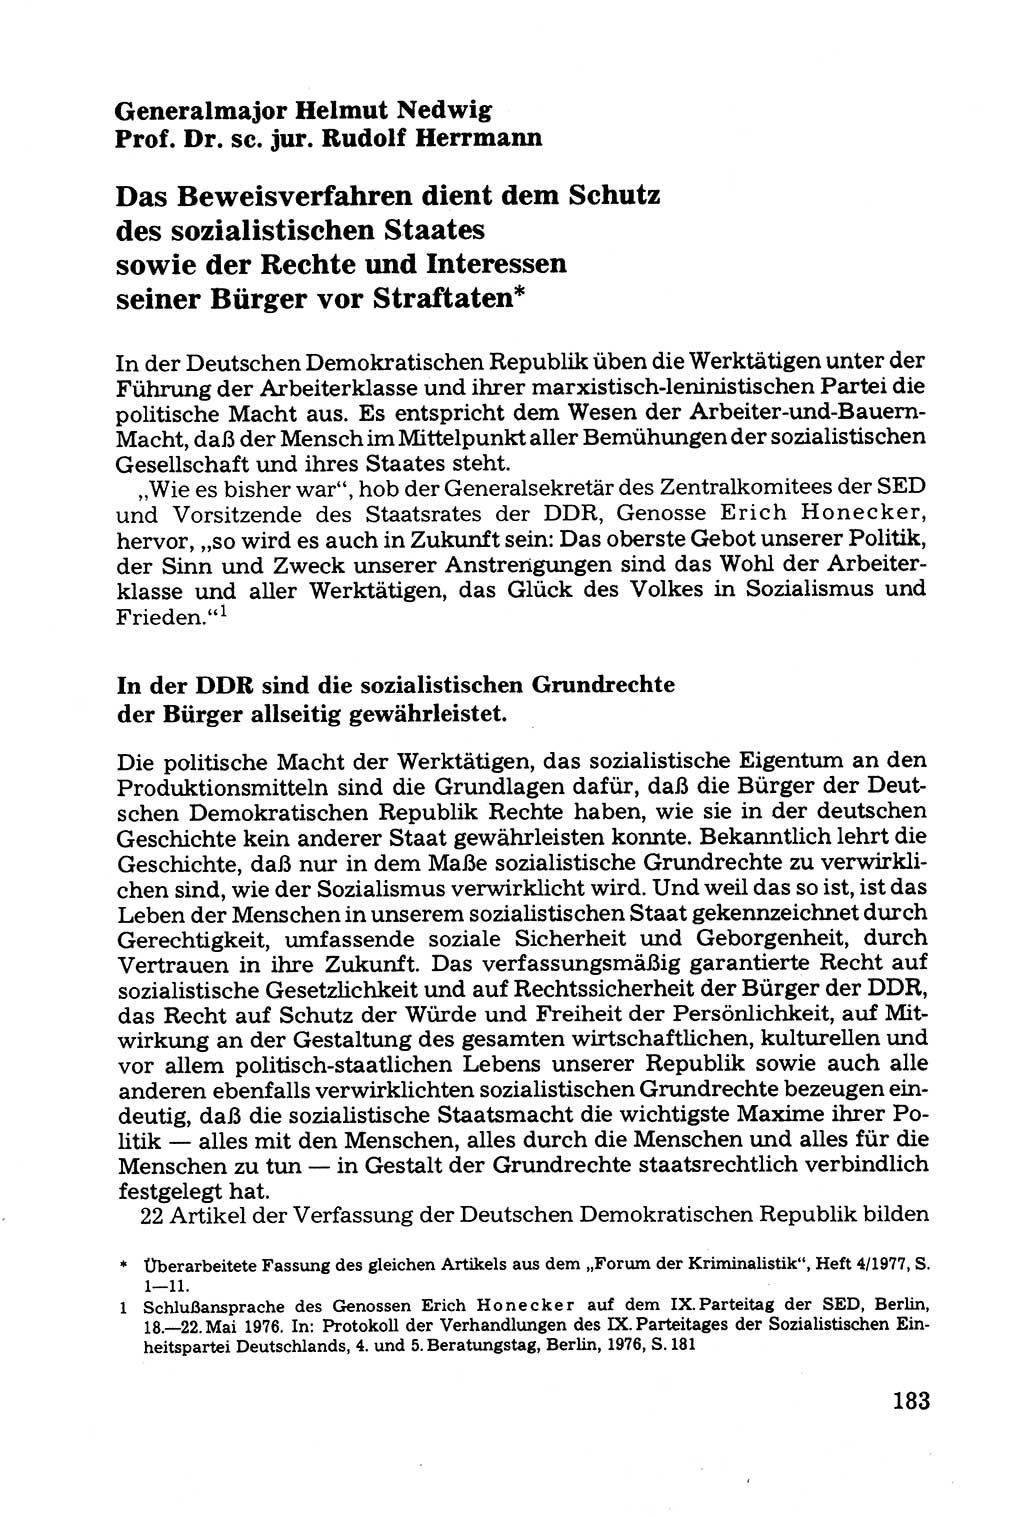 Grundfragen der Beweisführung im Ermittlungsverfahren [Deutsche Demokratische Republik (DDR)] 1980, Seite 183 (Bws.-Fhrg. EV DDR 1980, S. 183)